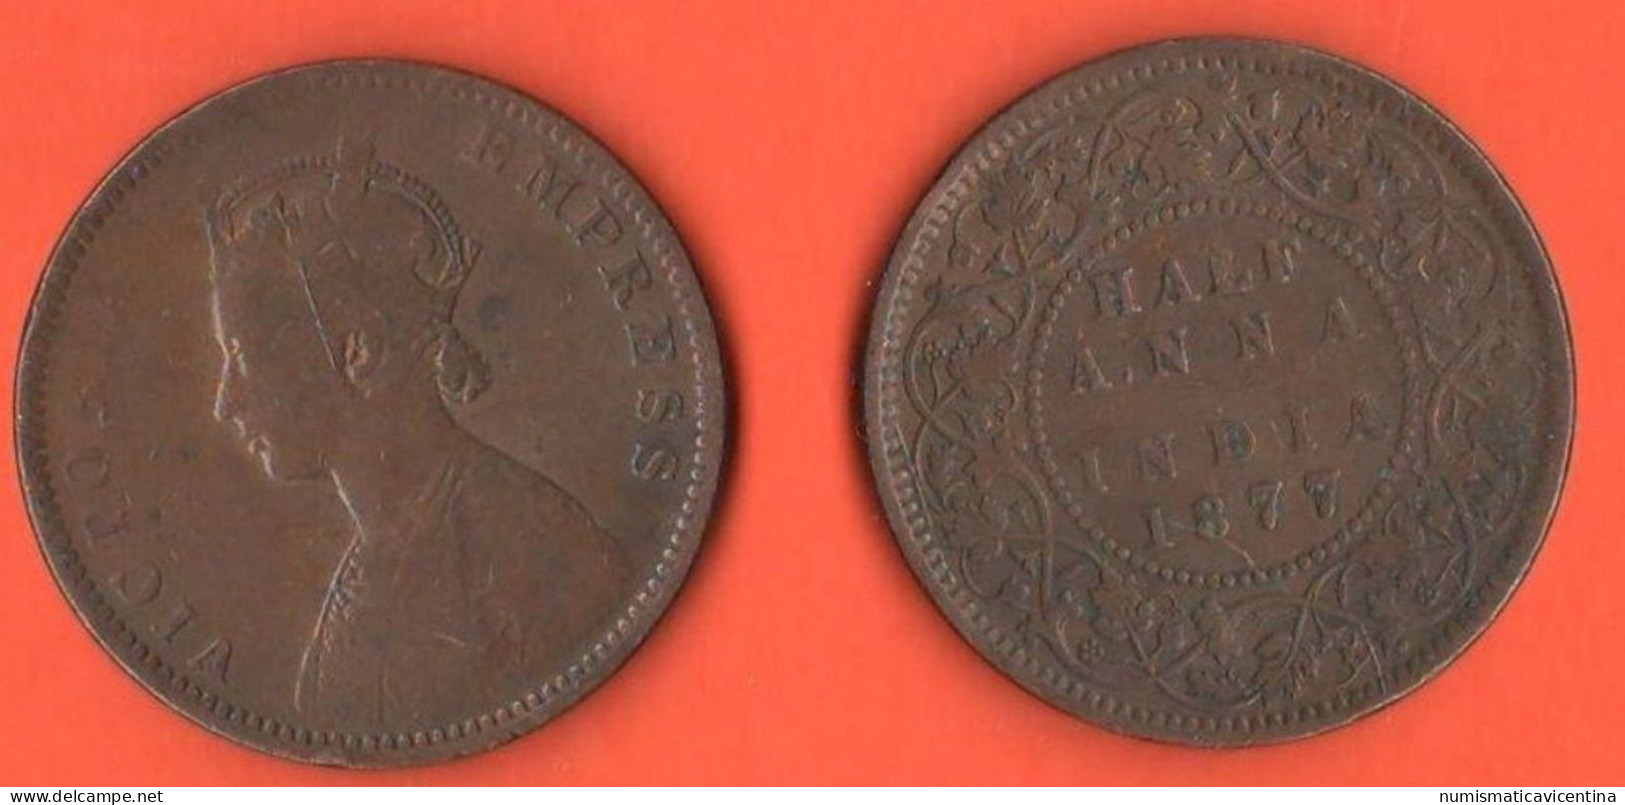 1/2 Anna 1877 British India Half Anna Indie Victoria Queen British Colonies Copper Coin K 487 - Kolonies